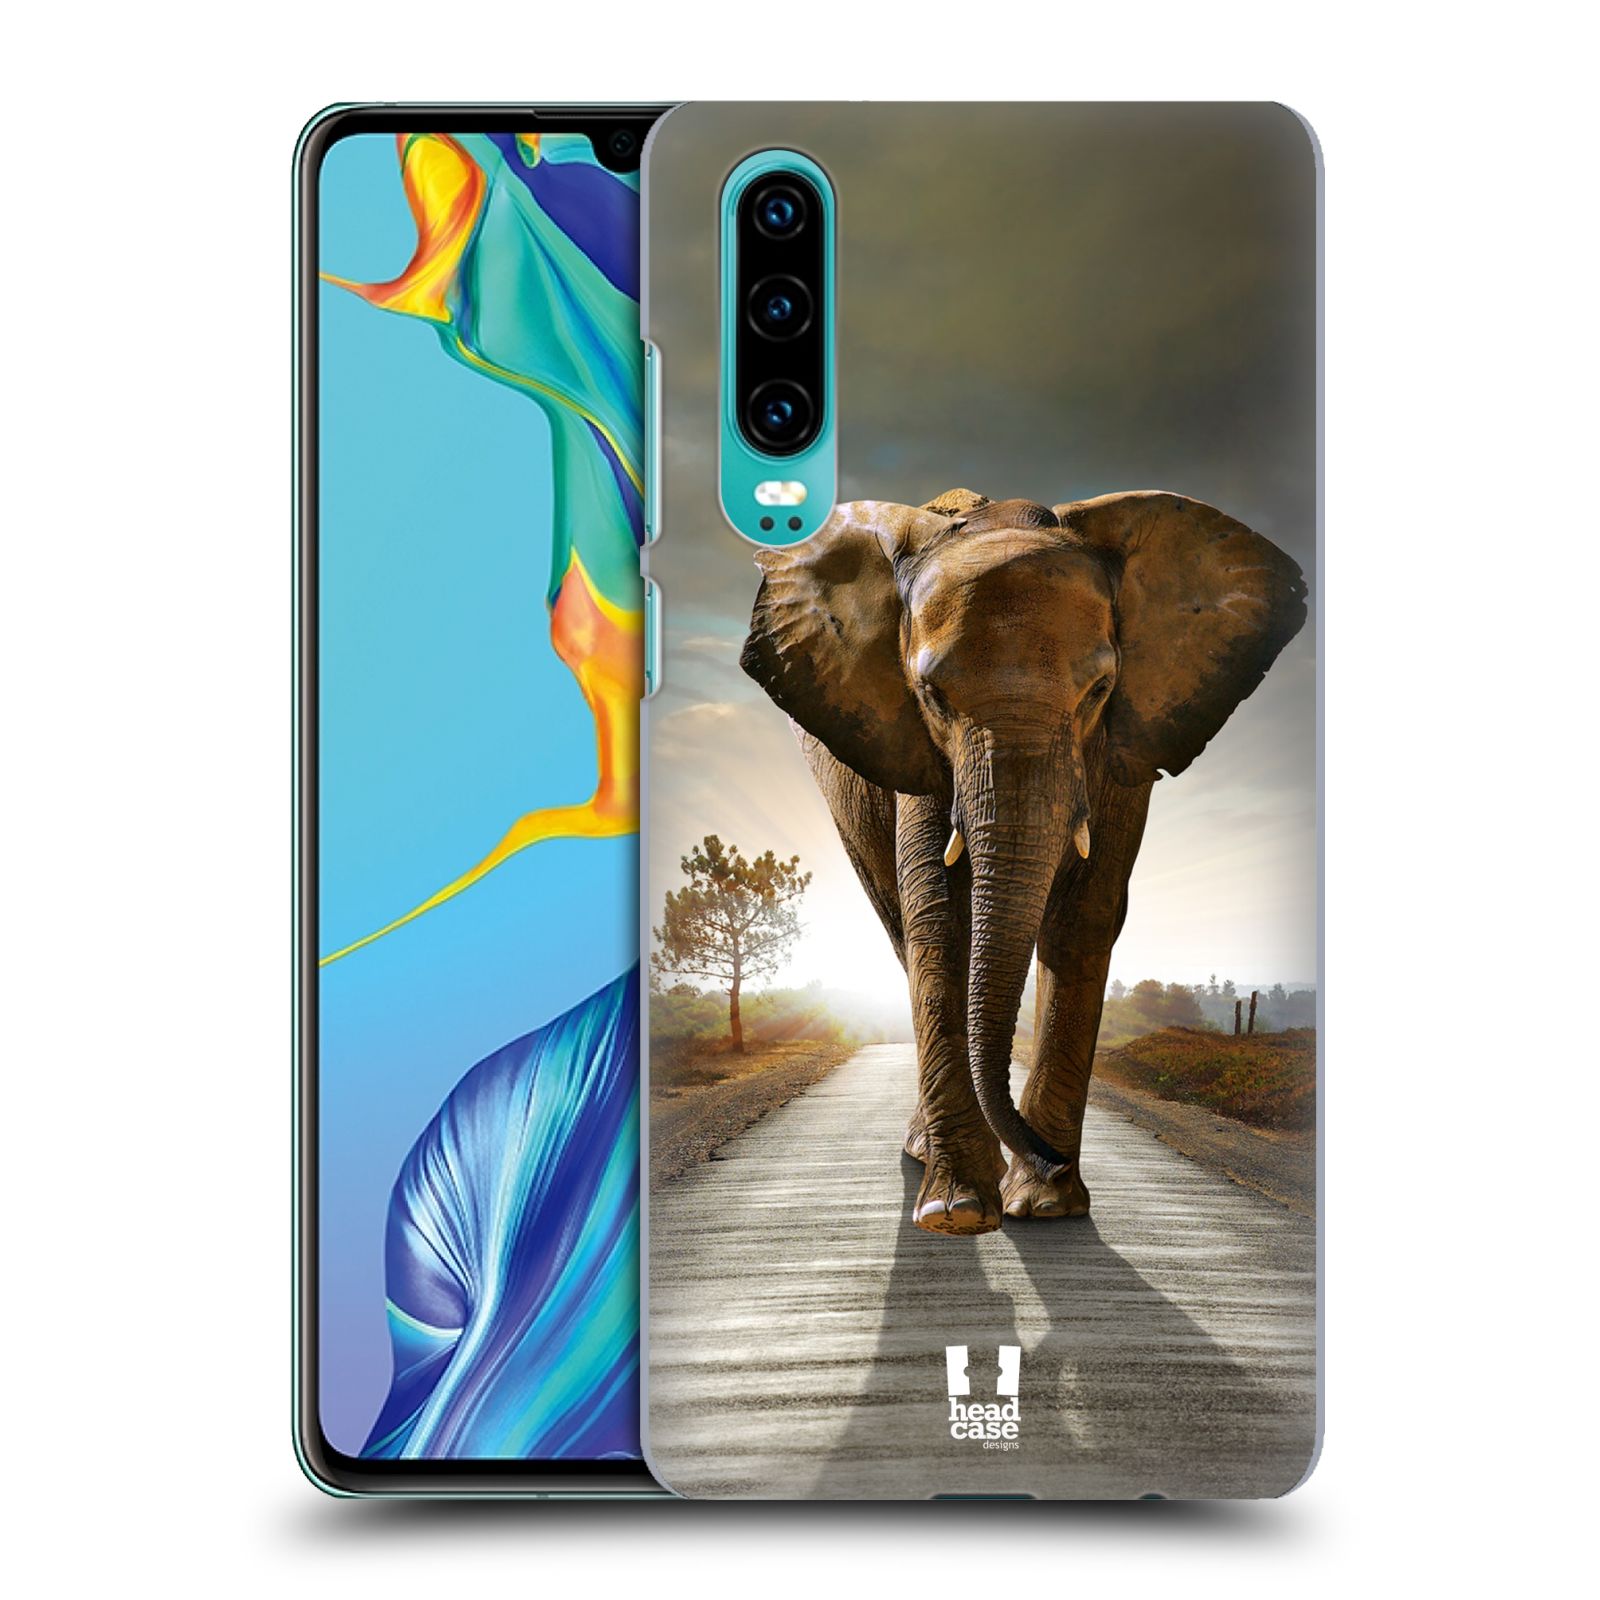 Zadní obal pro mobil Huawei P30 - HEAD CASE - Svět zvířat kráčející slon